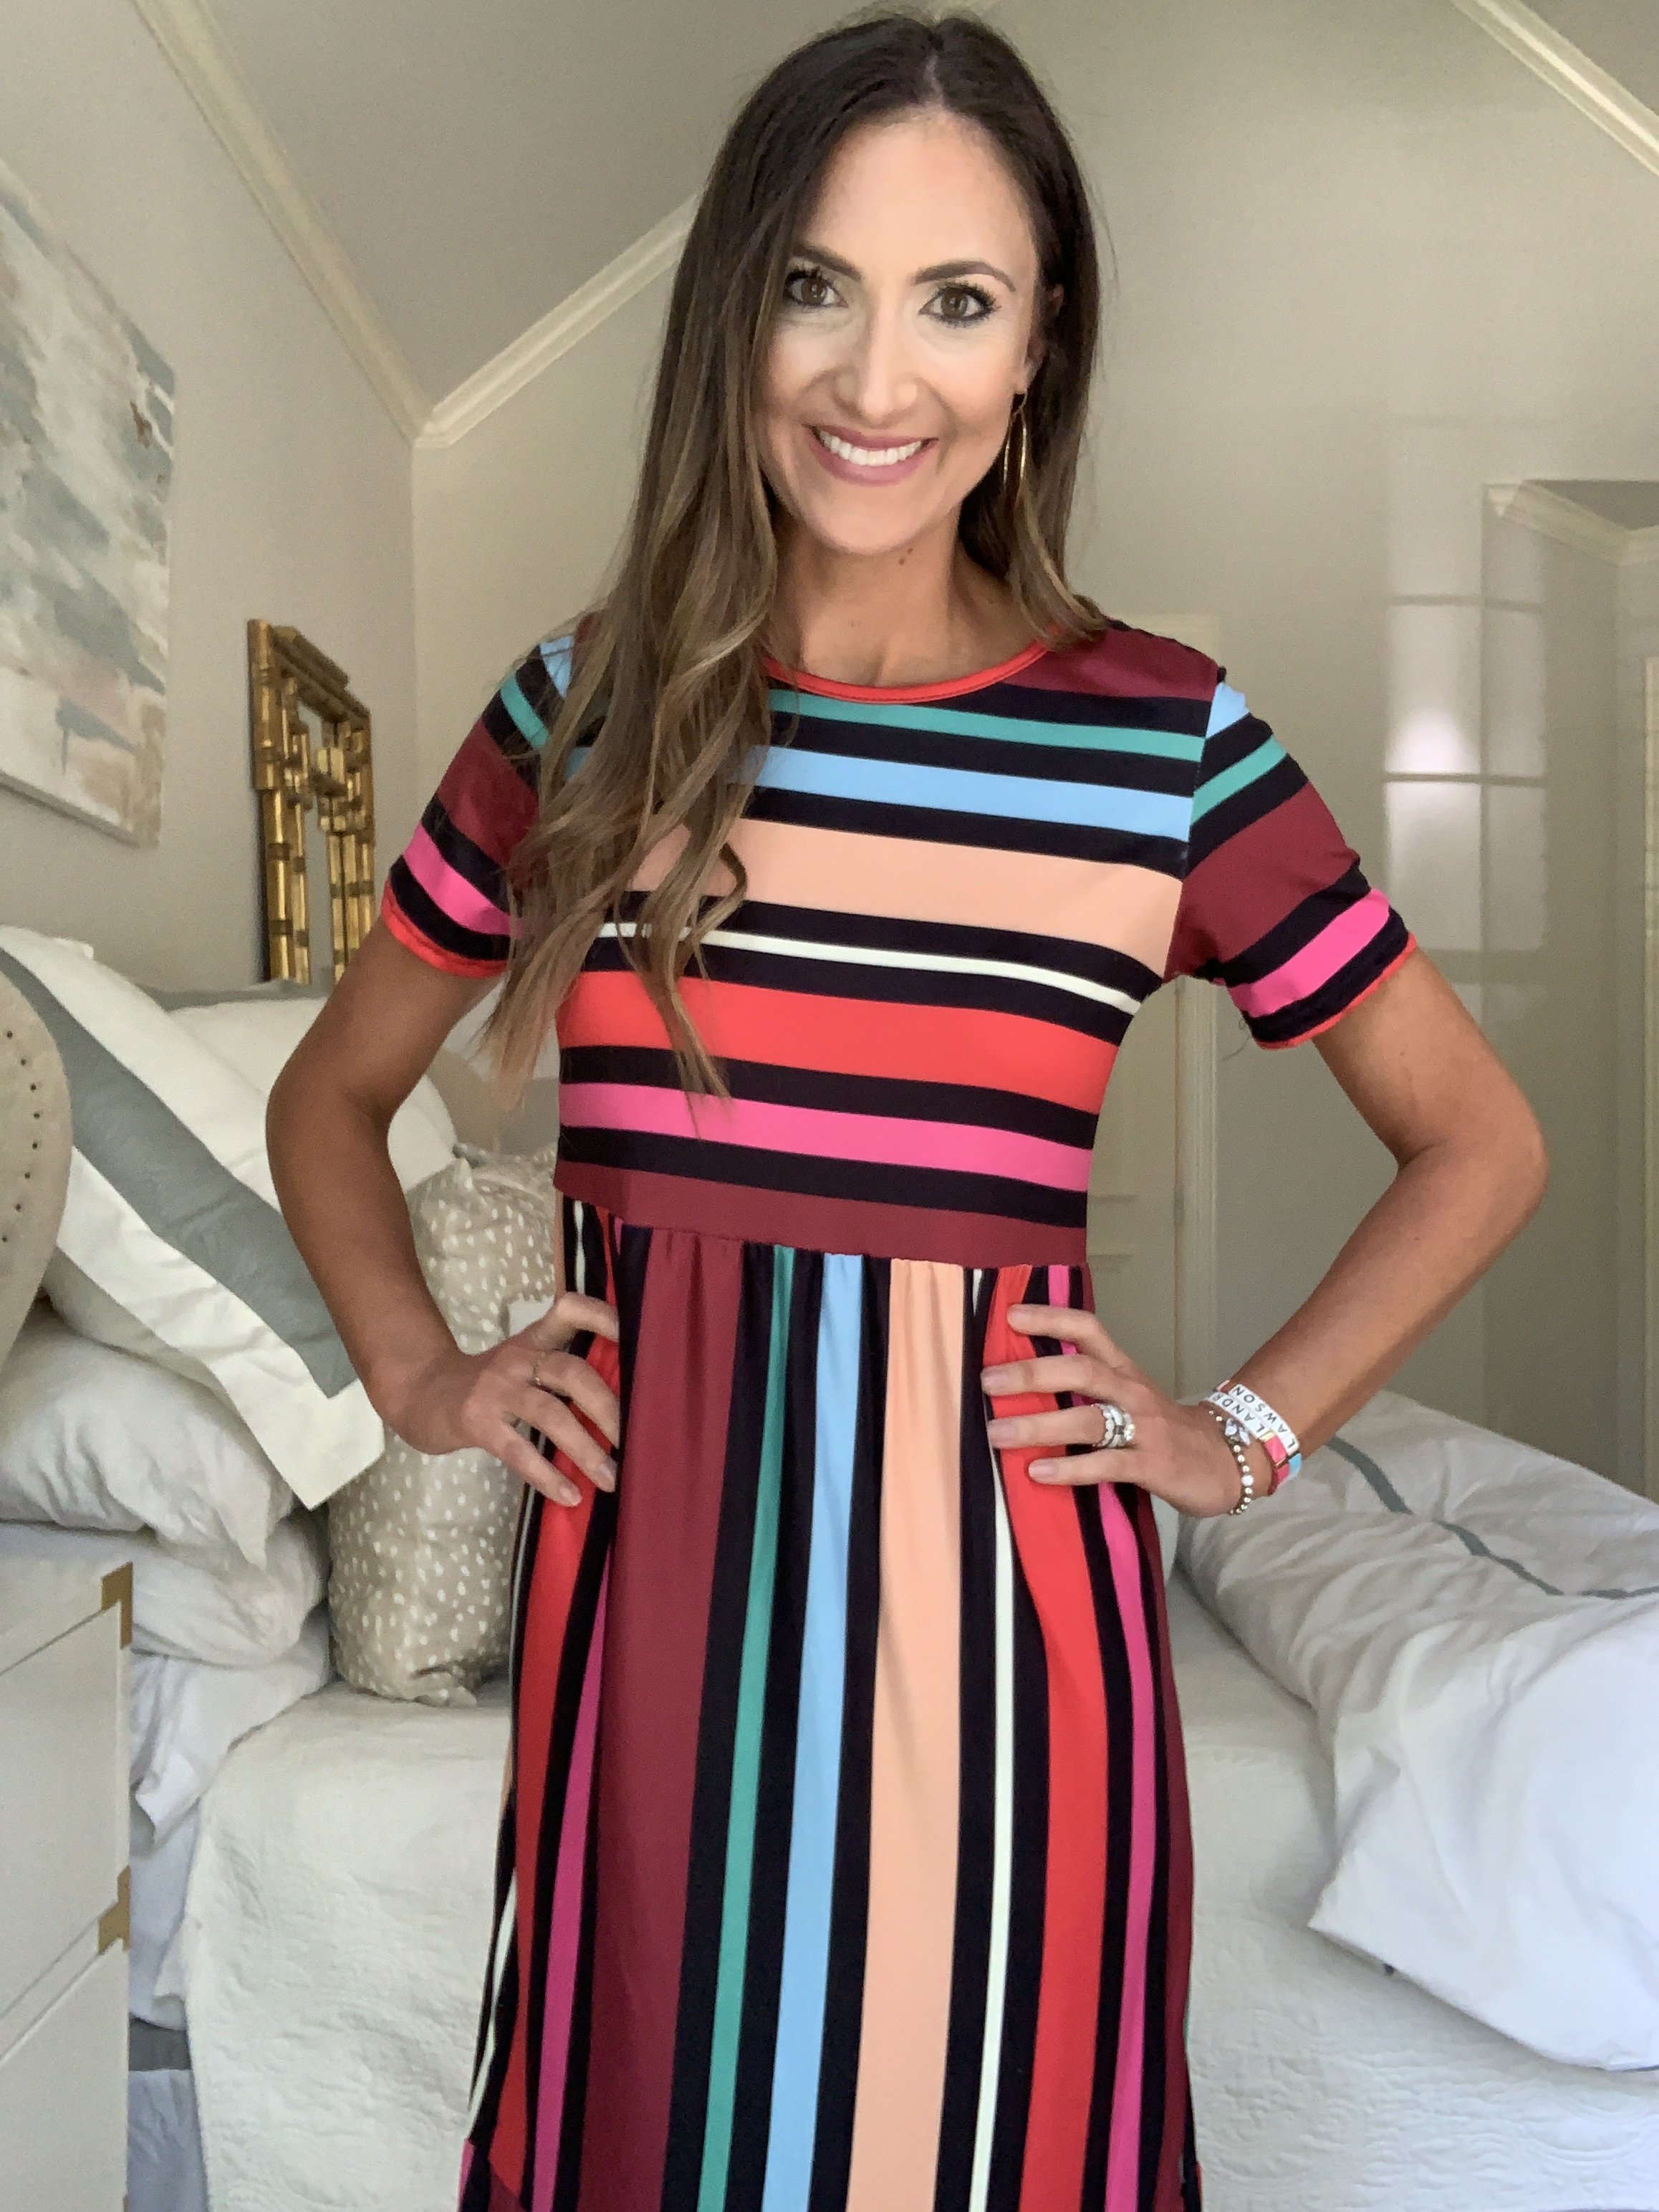 Stripe midi dress from amazon | Amazon Fashion Haul | Style Your Senses